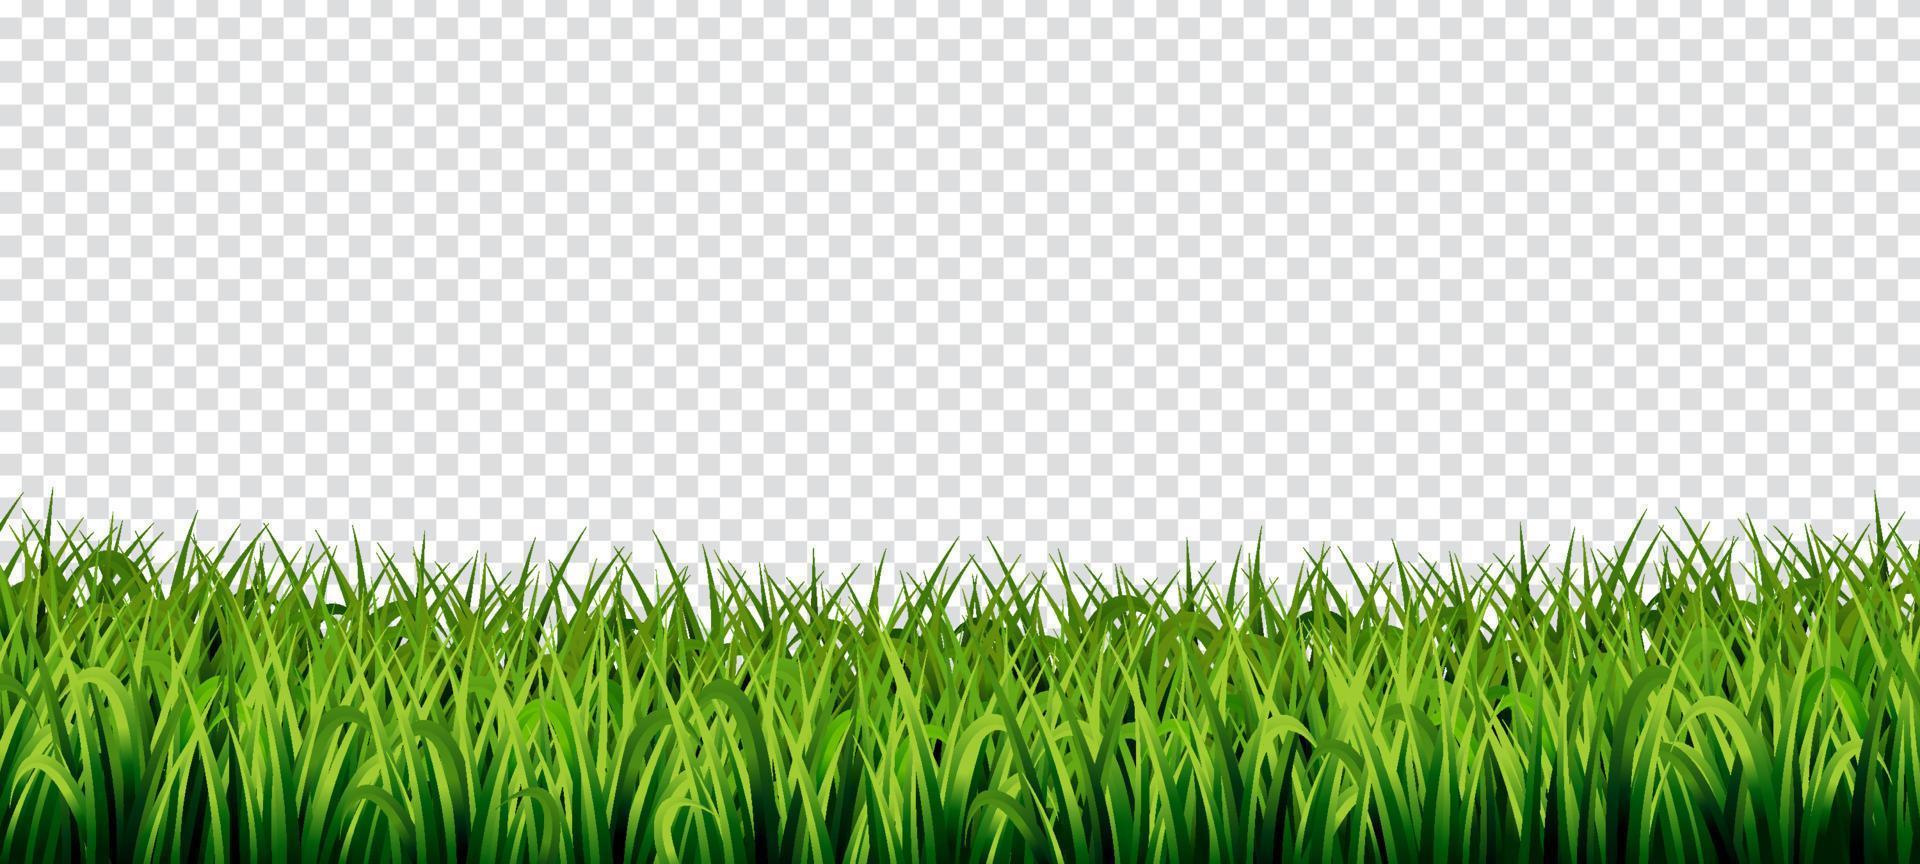 sfondo trasparente di erba vettore